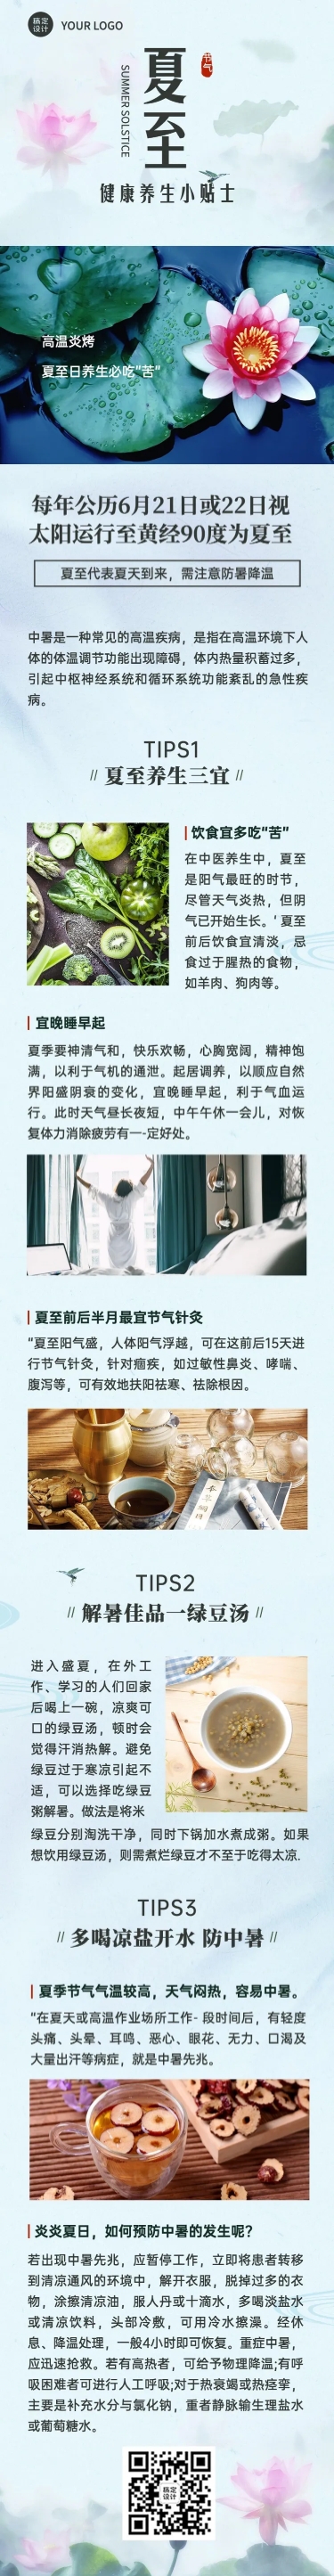 医疗保健节气营销中国风长图预览效果